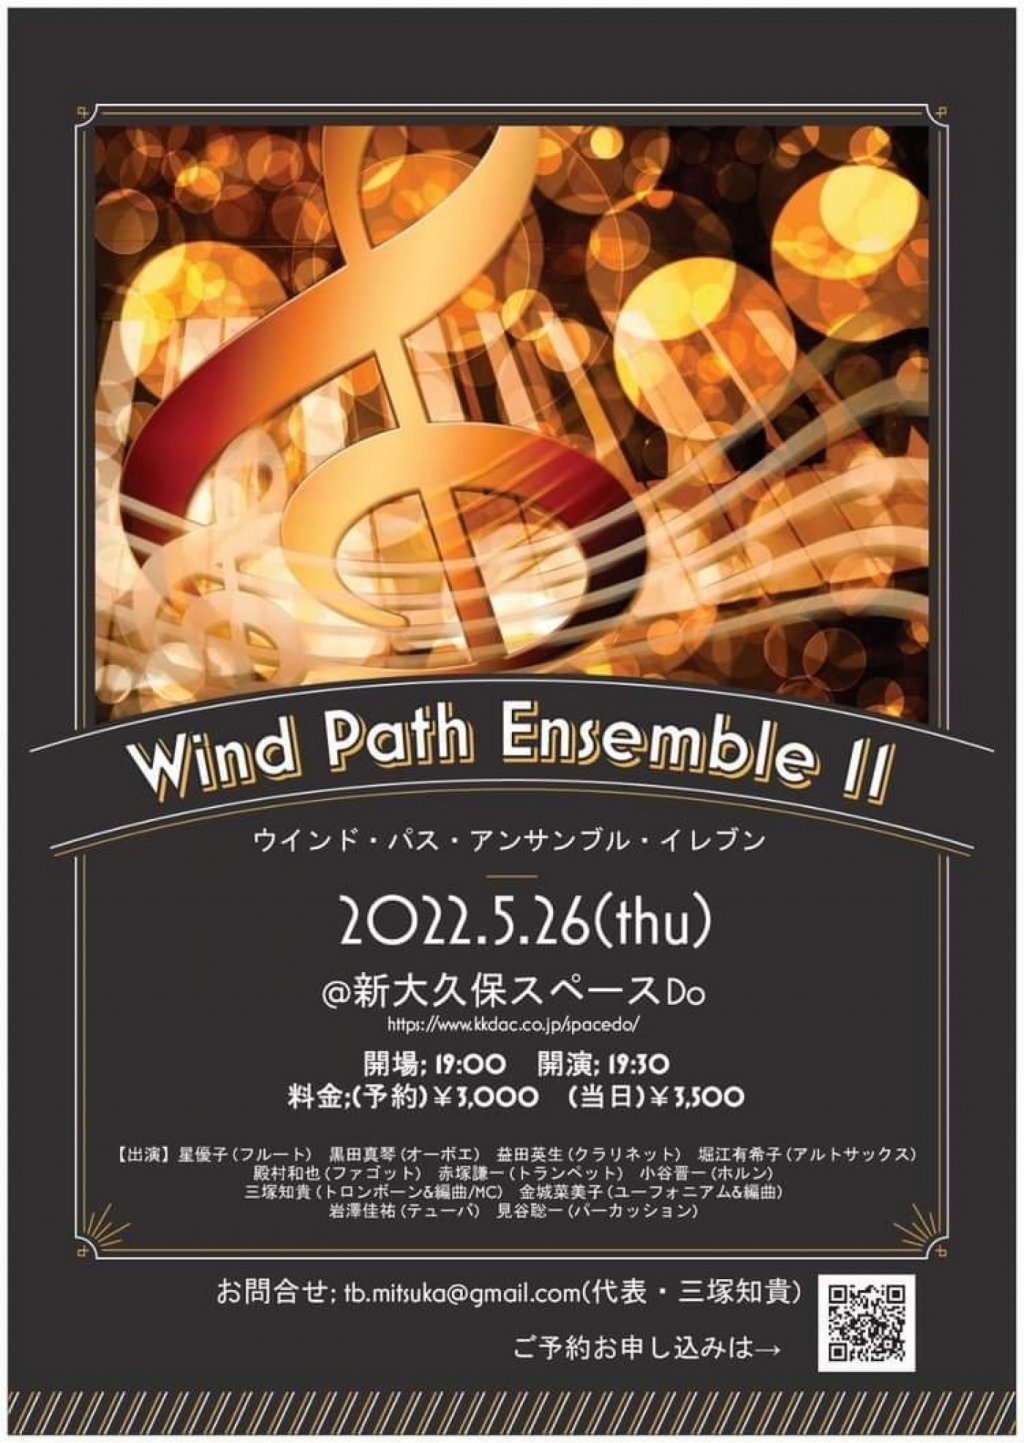 Wind Path Ensemble 11(ウインド・パス・アンサンブル・イレブン)